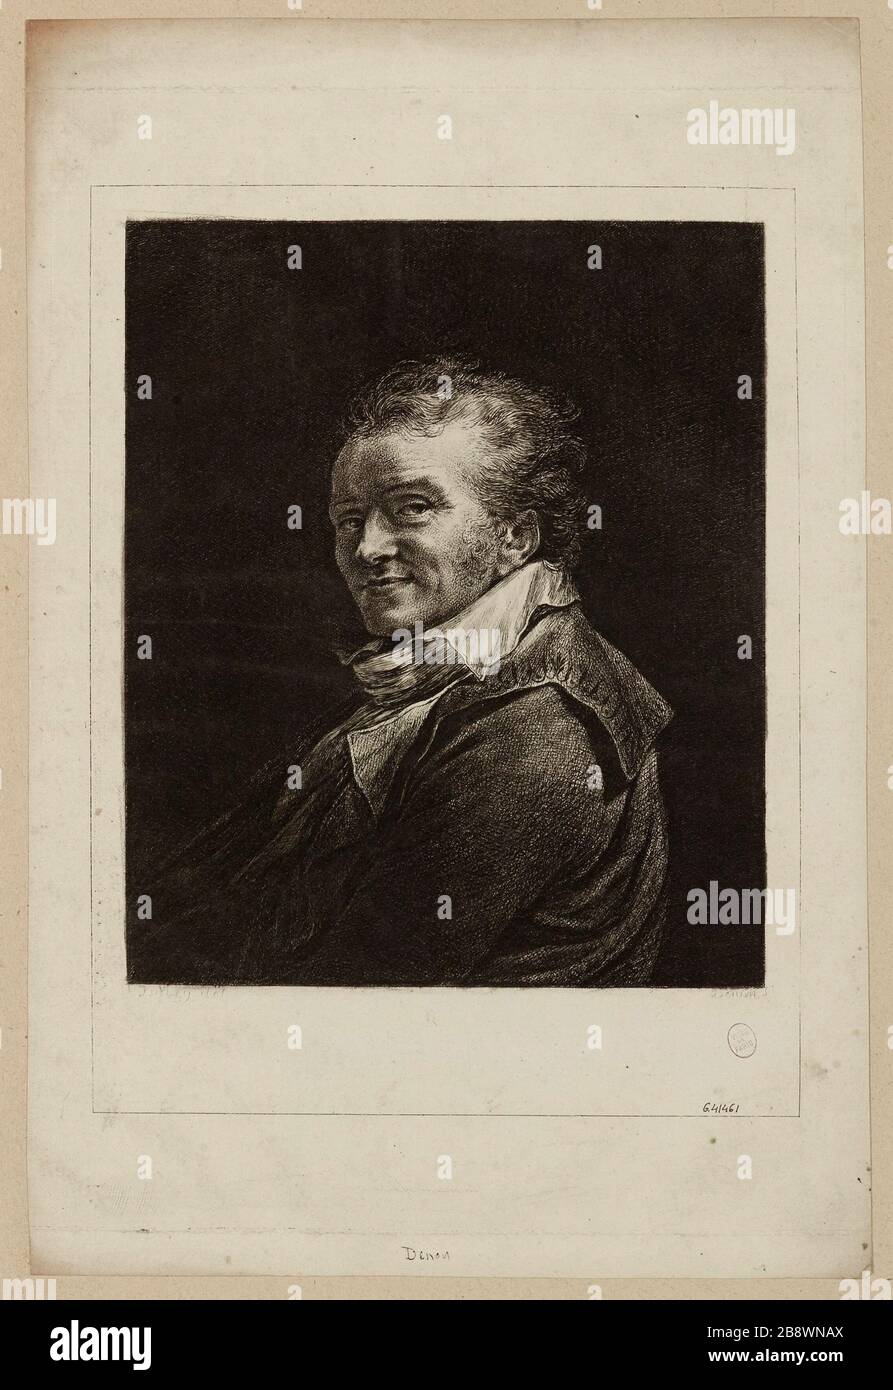 Dominique Vivant Baron Denon, ha detto Vivant Denon o Vivant Denon (1747-1825), scrittore, diplomatico e amministratore francese. Foto Stock